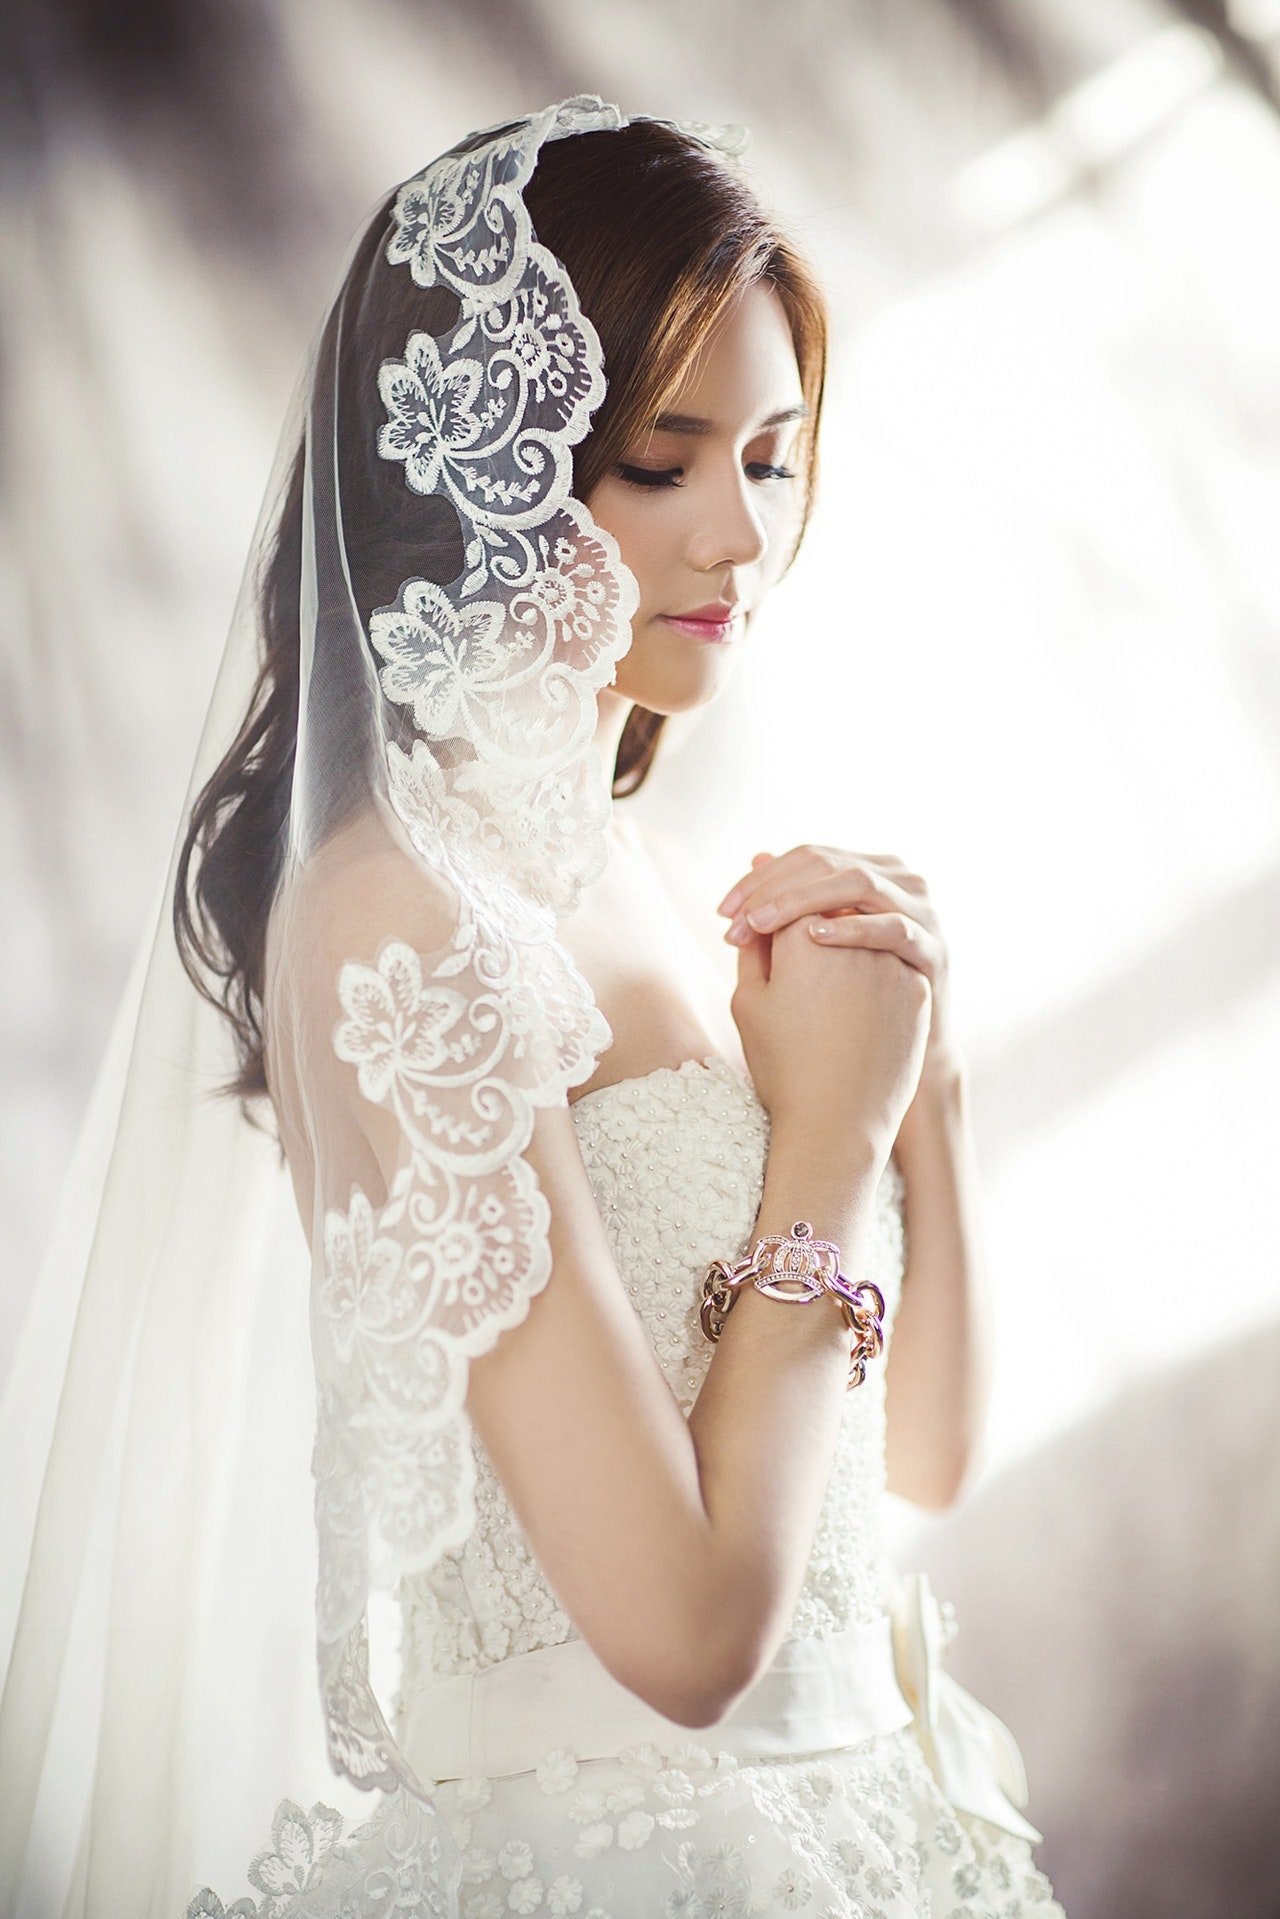 Dama con su traje de novia, el cual acompañó con un velo.| Foto: Pexels